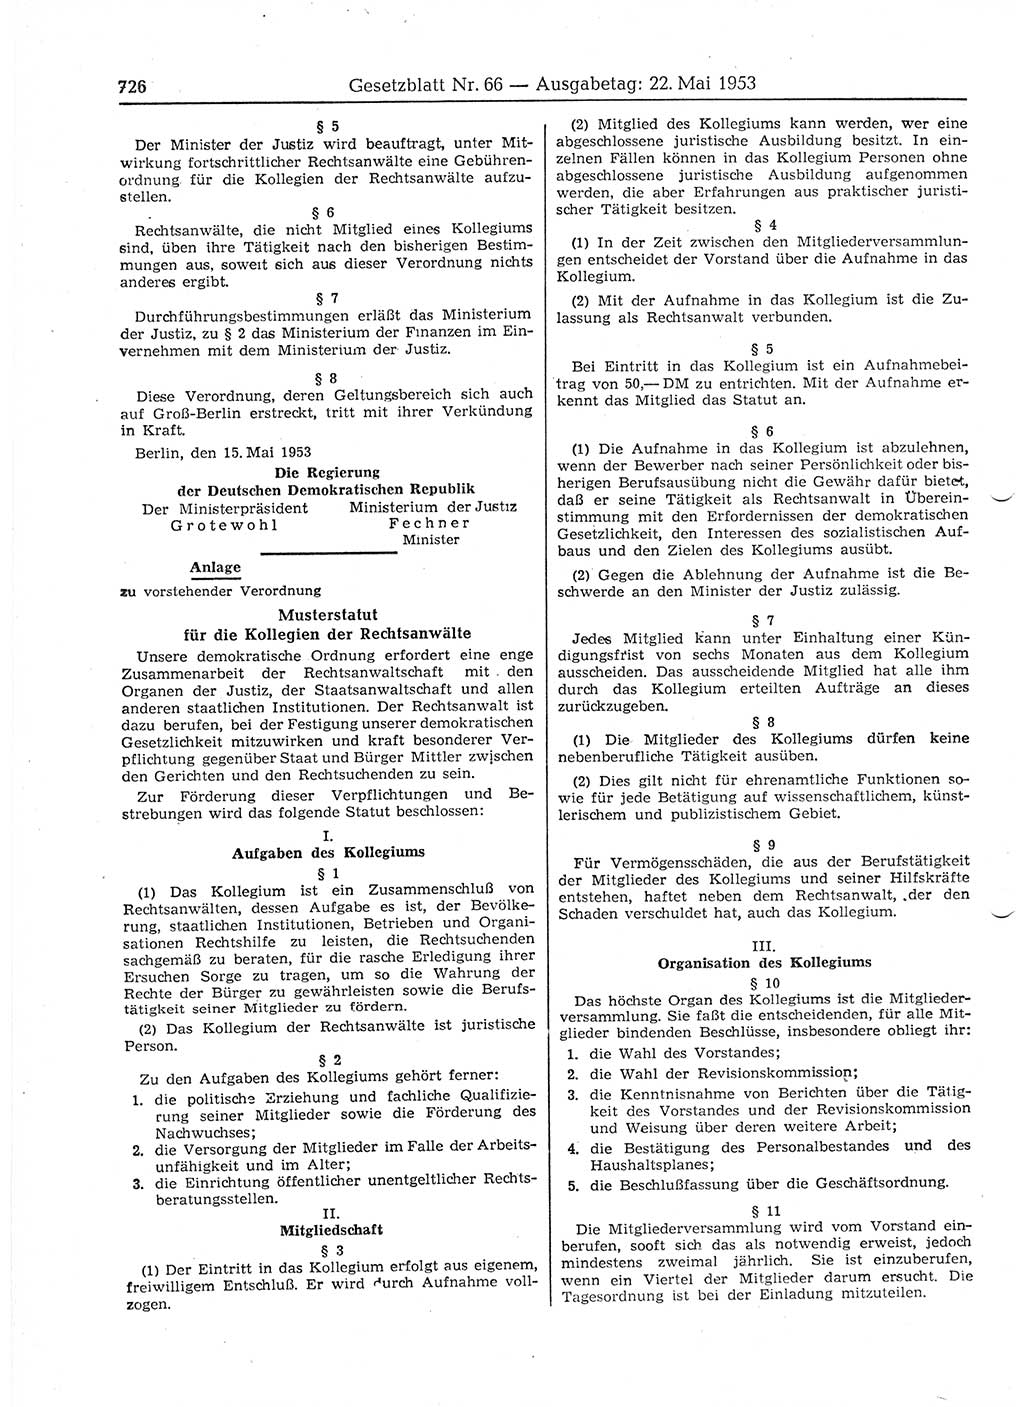 Gesetzblatt (GBl.) der Deutschen Demokratischen Republik (DDR) 1953, Seite 726 (GBl. DDR 1953, S. 726)